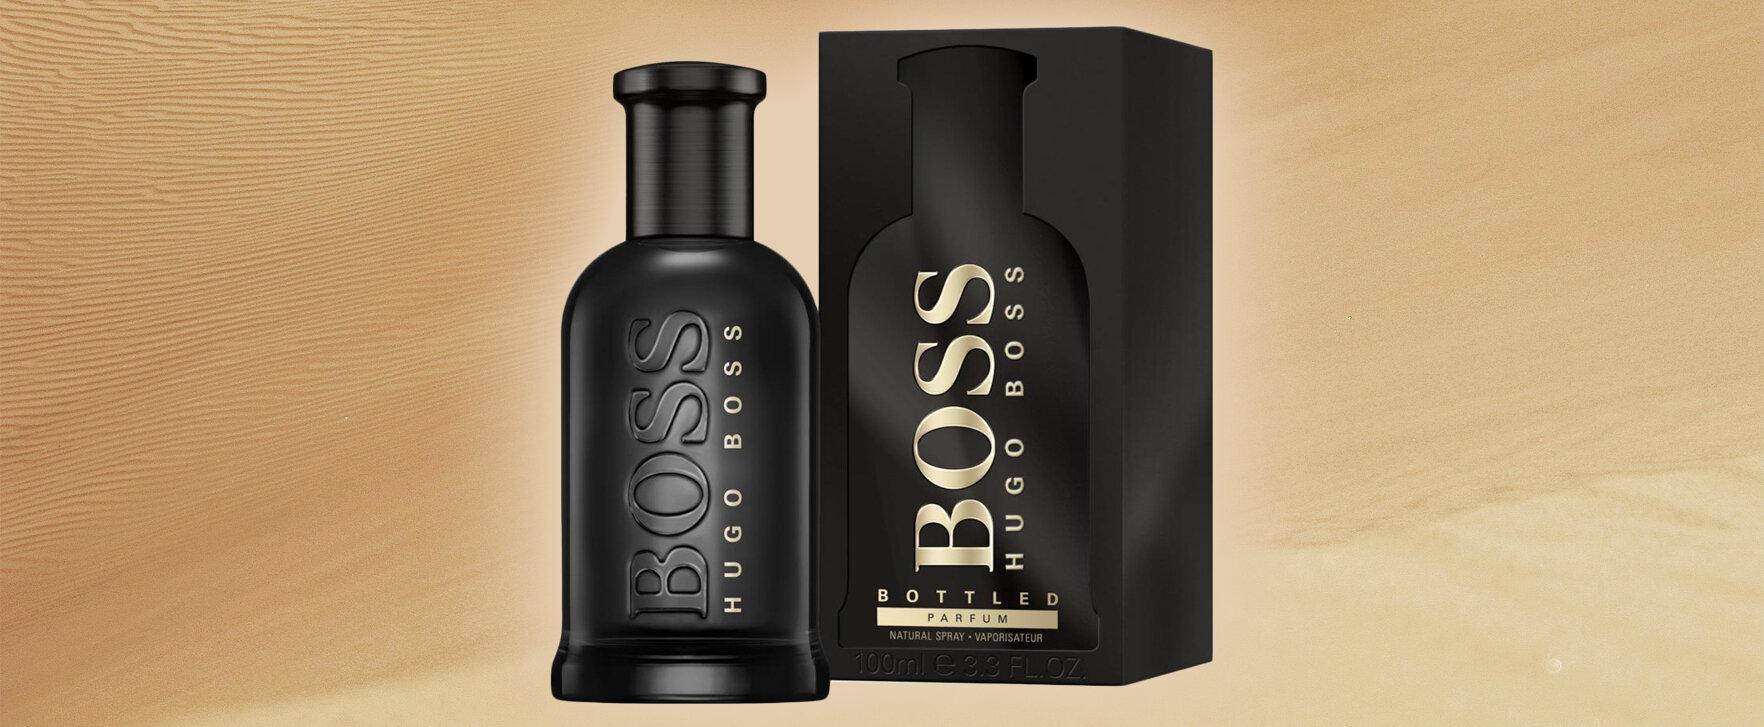 Hugo Boss bringt Klassiker auf das nächste Level - das neue „Boss Bottled Parfum“